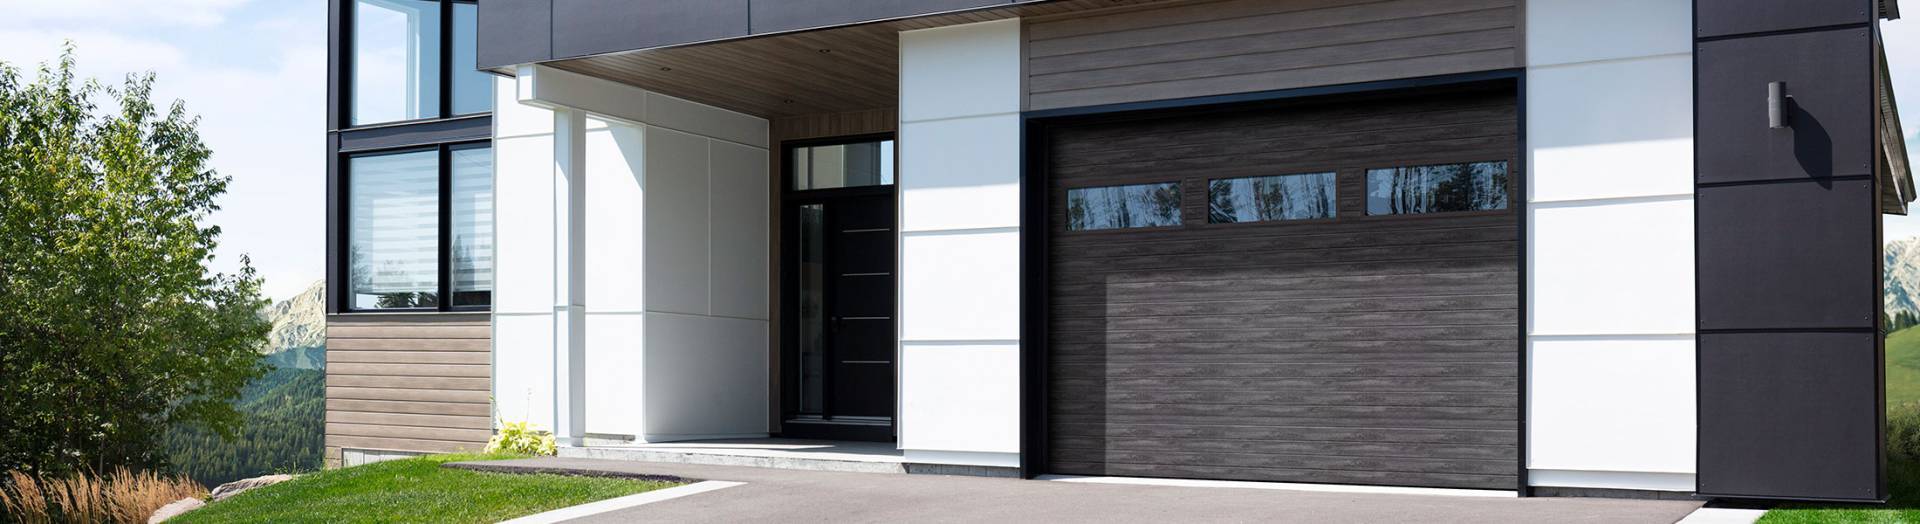 Maison moderne, bois cendré, fibrociment blanc, fenêtre et porte noirs, porte de garage Gris patiné, similibois